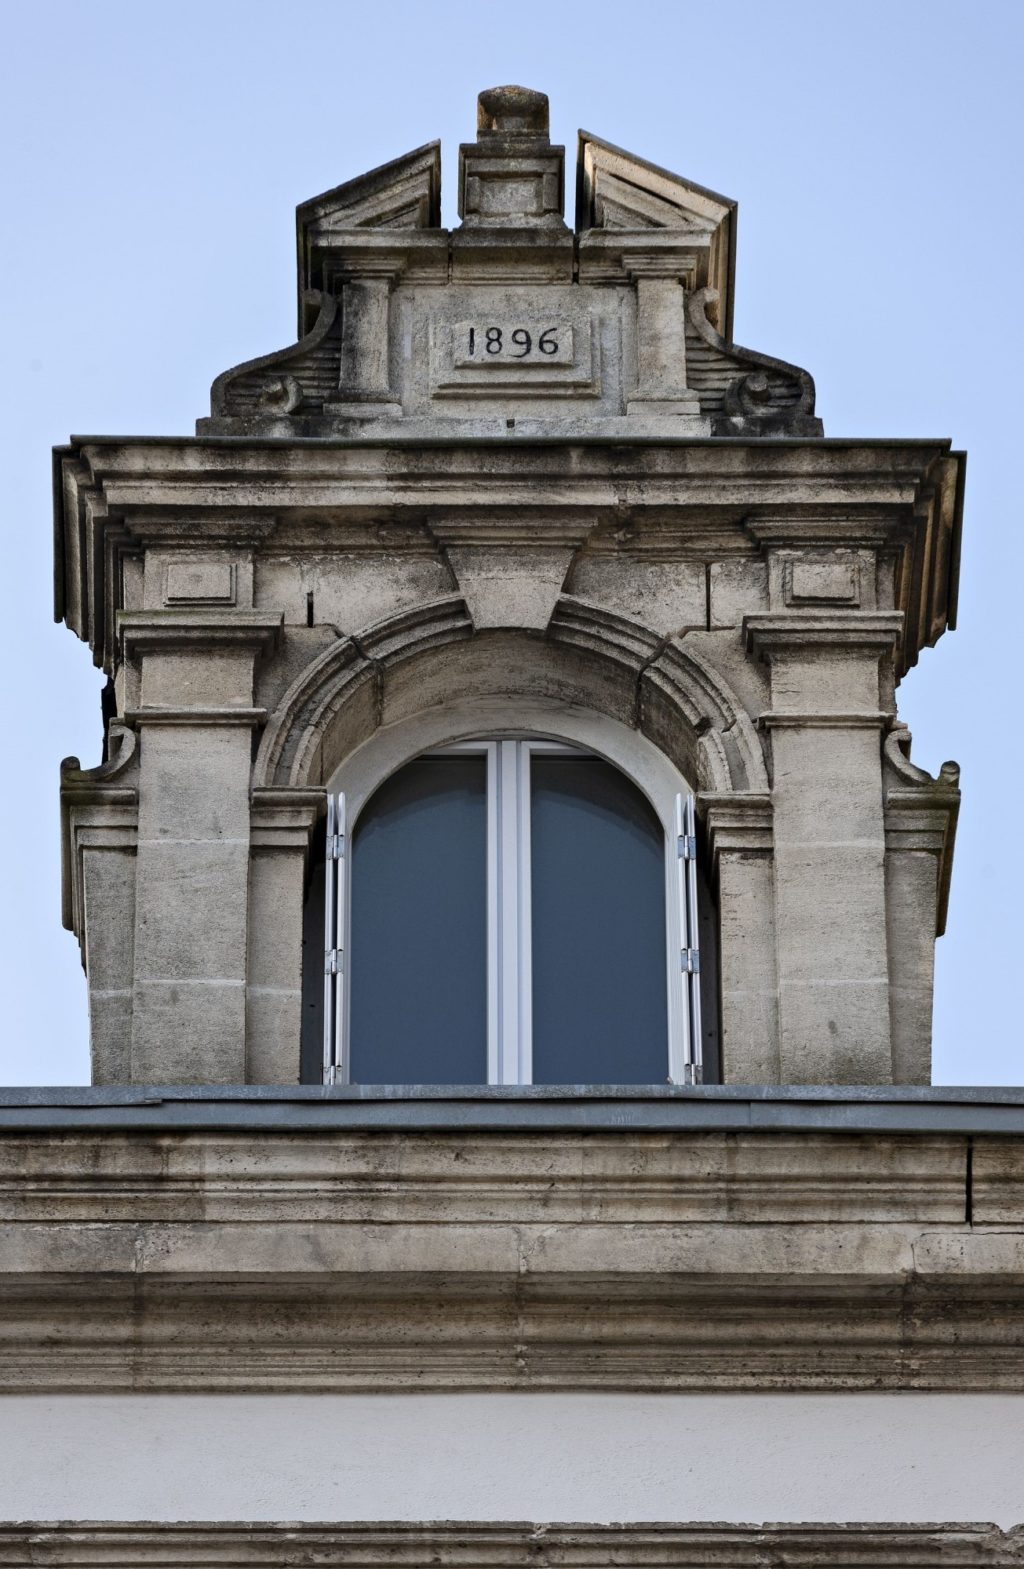 Vue détaillée d'une fenêtre encadrée par deux pilastres. Au-dessus, un fronton avec l'inscription "1896".